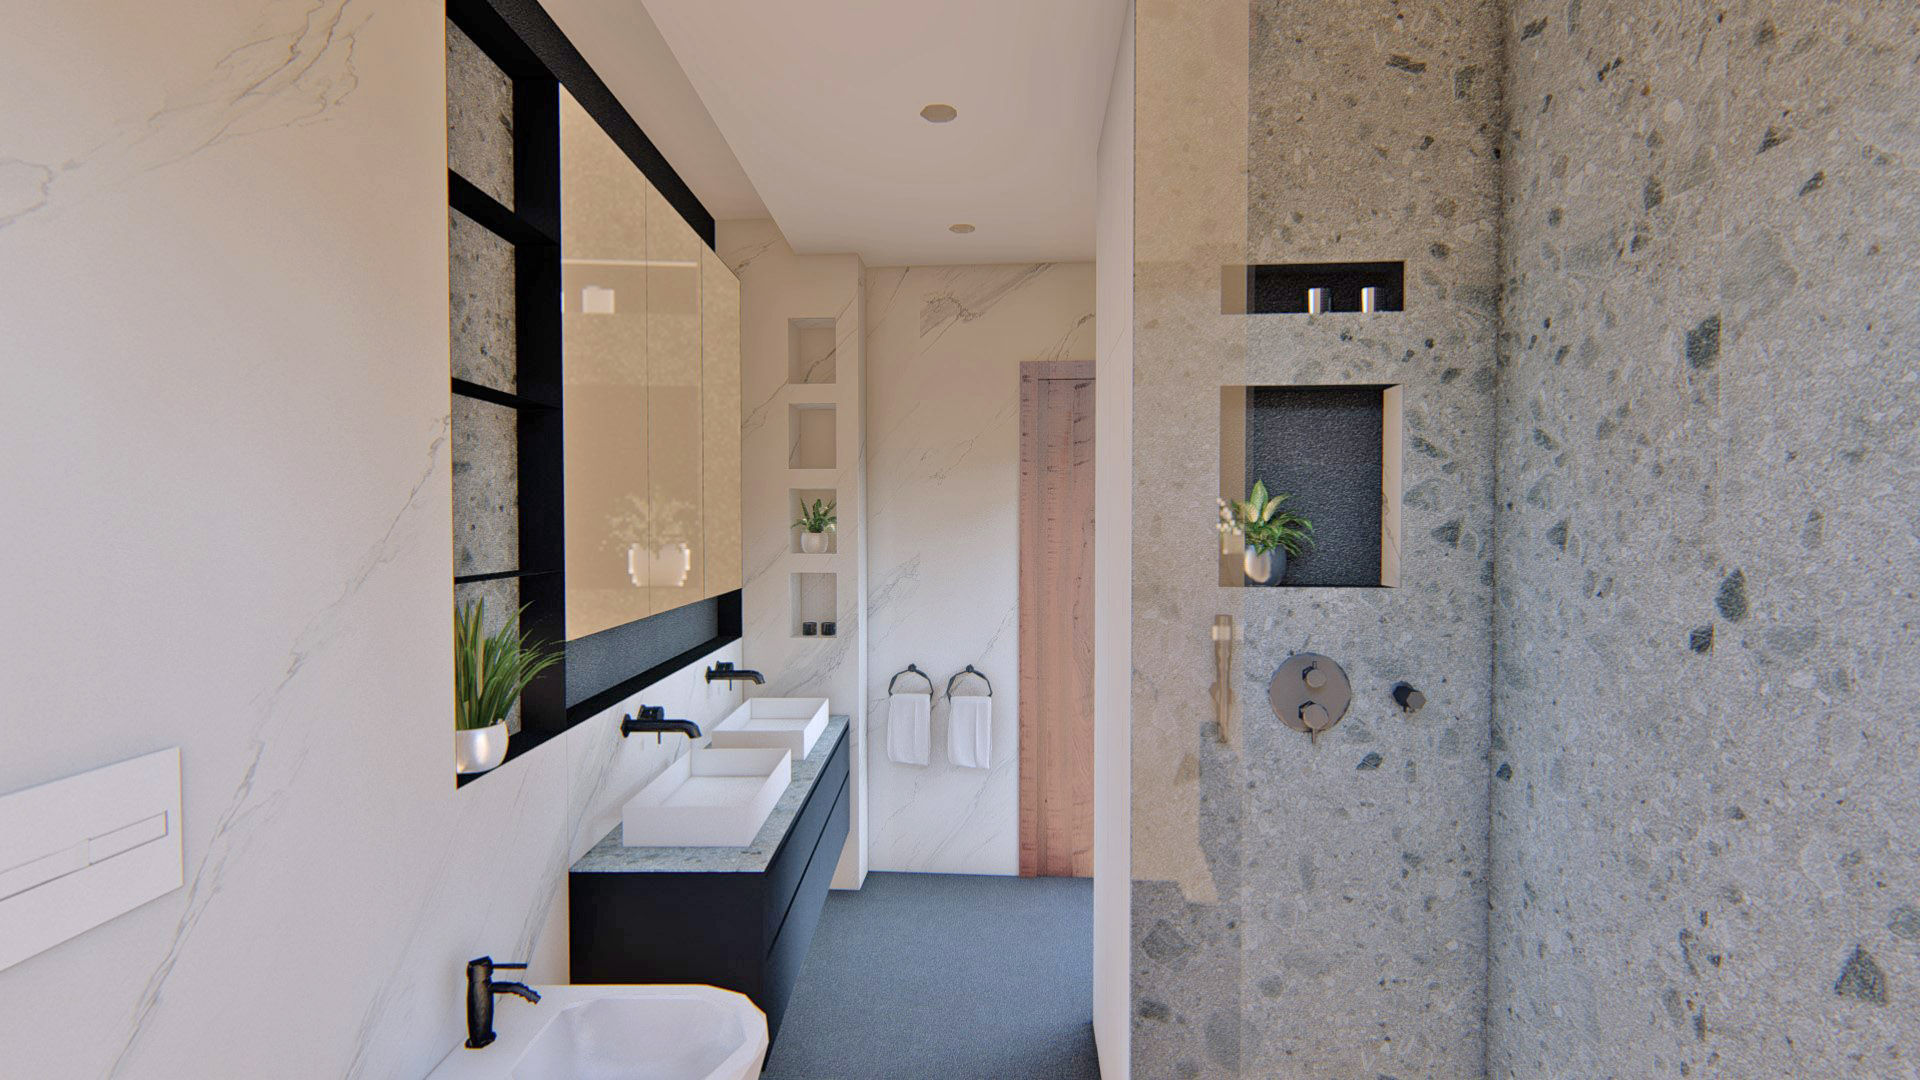 Un baño reformado al completo, Arquitectura Sostenible e Interiorismo | a-nat Arquitectura Sostenible e Interiorismo | a-nat 浴室